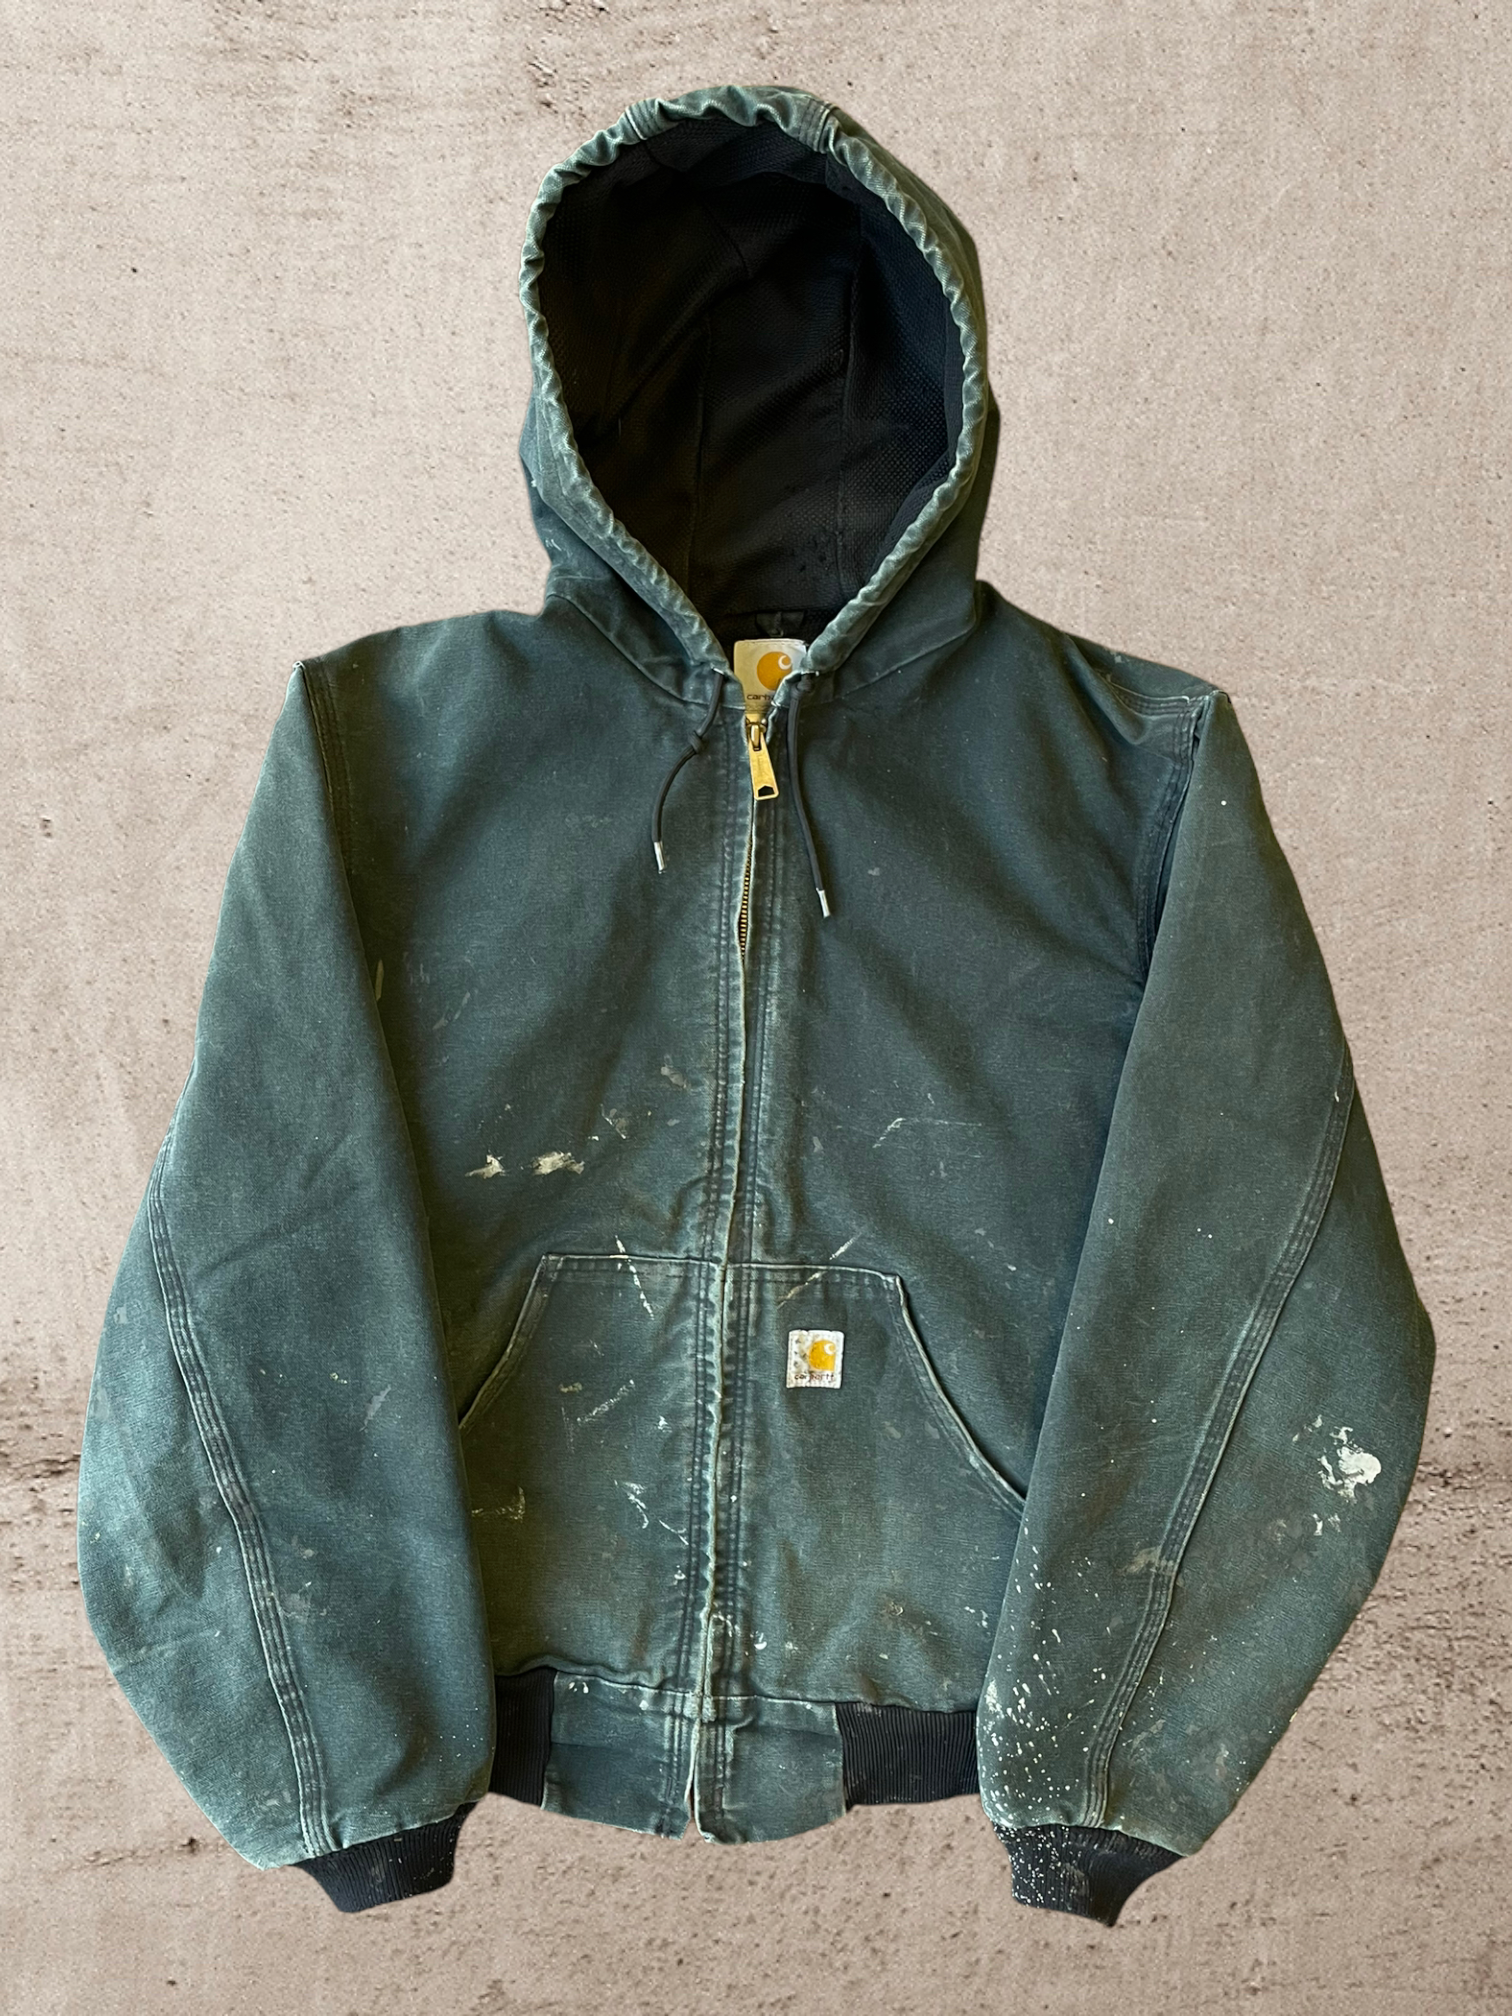 Vintage Distressed Carhartt Hooded Jacket - Medium/Large